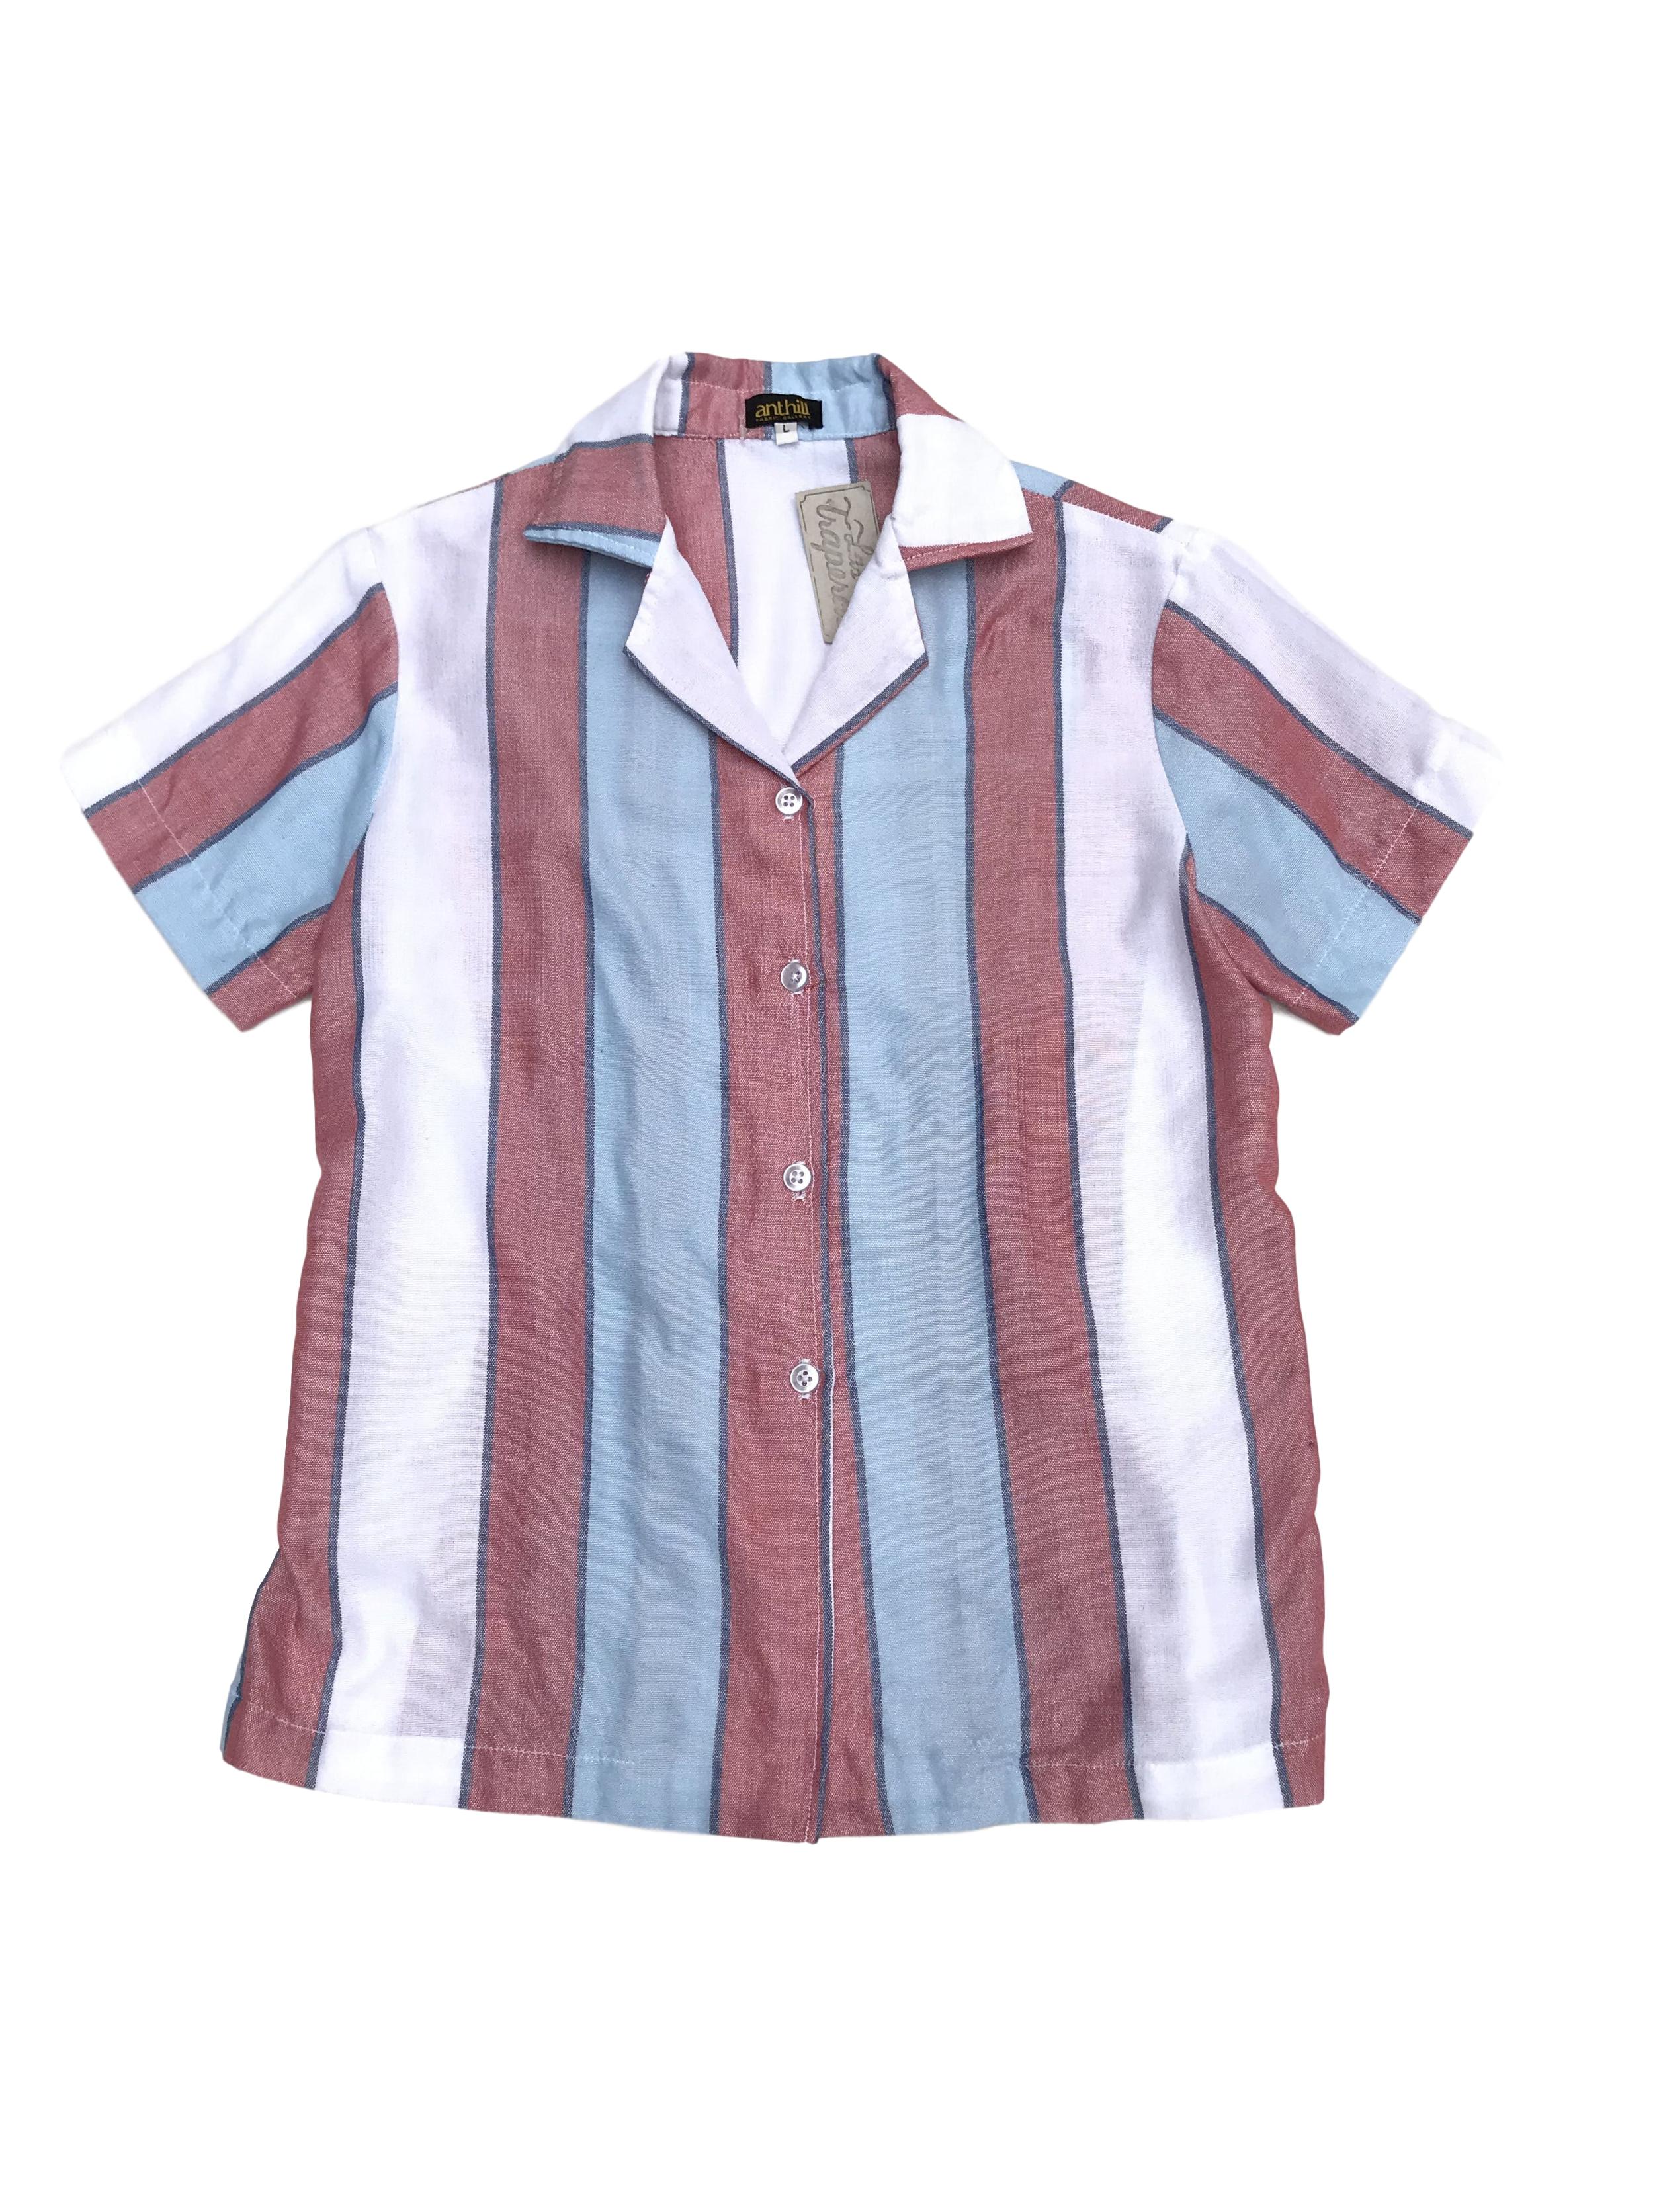 Blusa de marca sostenible Anthill de algodón y polyester upcycled, franjas verticales en tonos celeste, blanco y rojo. Busto 96cm. Nuevo. Precio original S/ 220